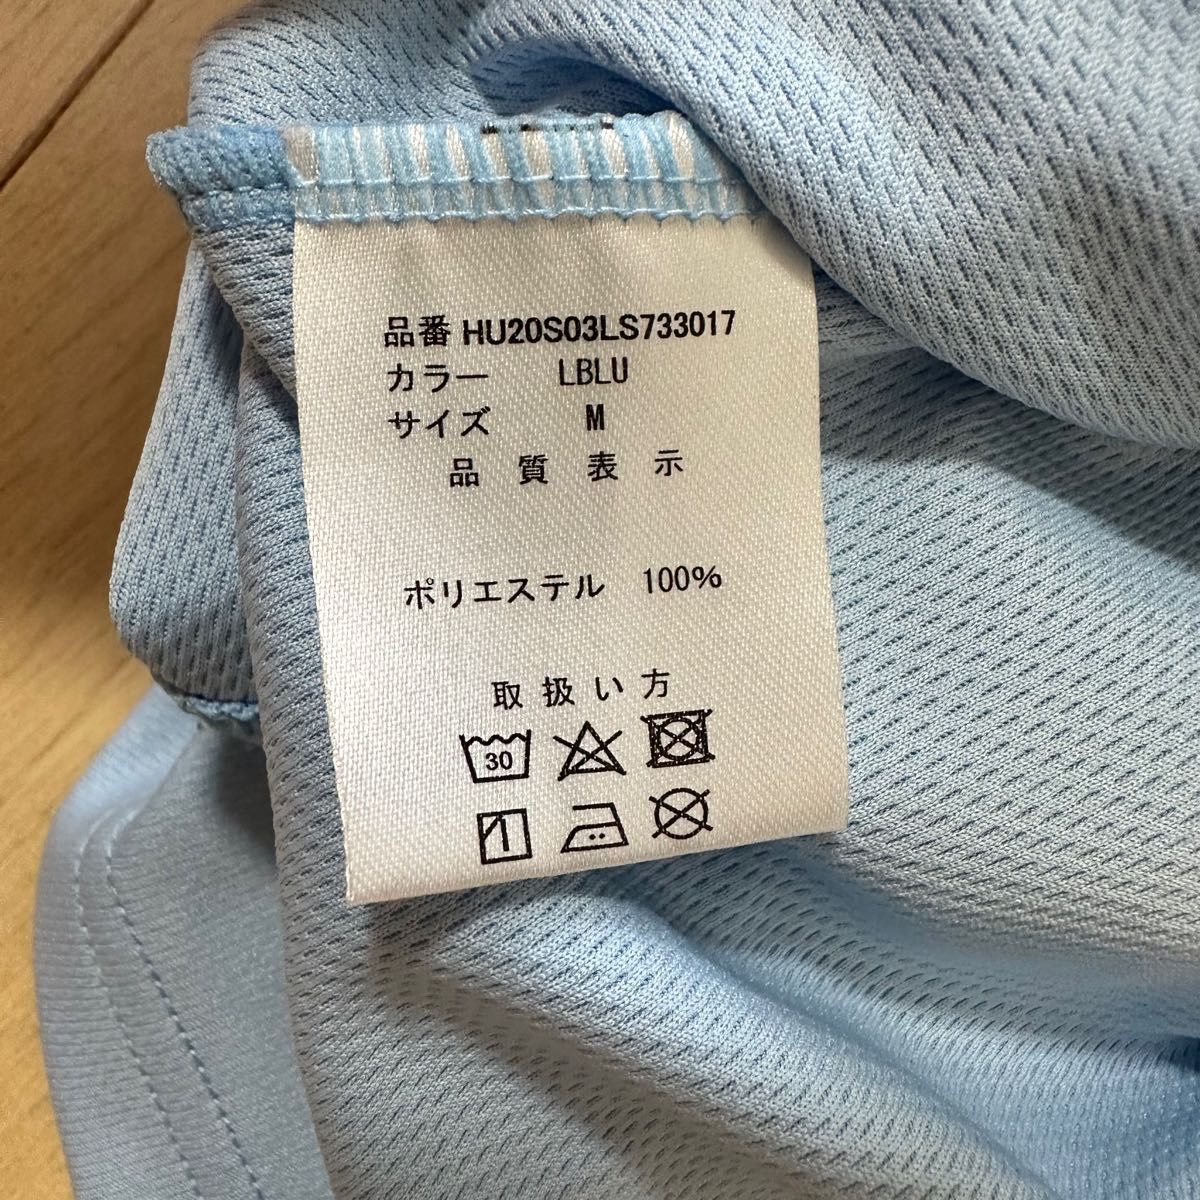 ウィッテム Tシャツ DP T-SHIRT 8E LBLU Mサイズ HUITIEME テニスウェア